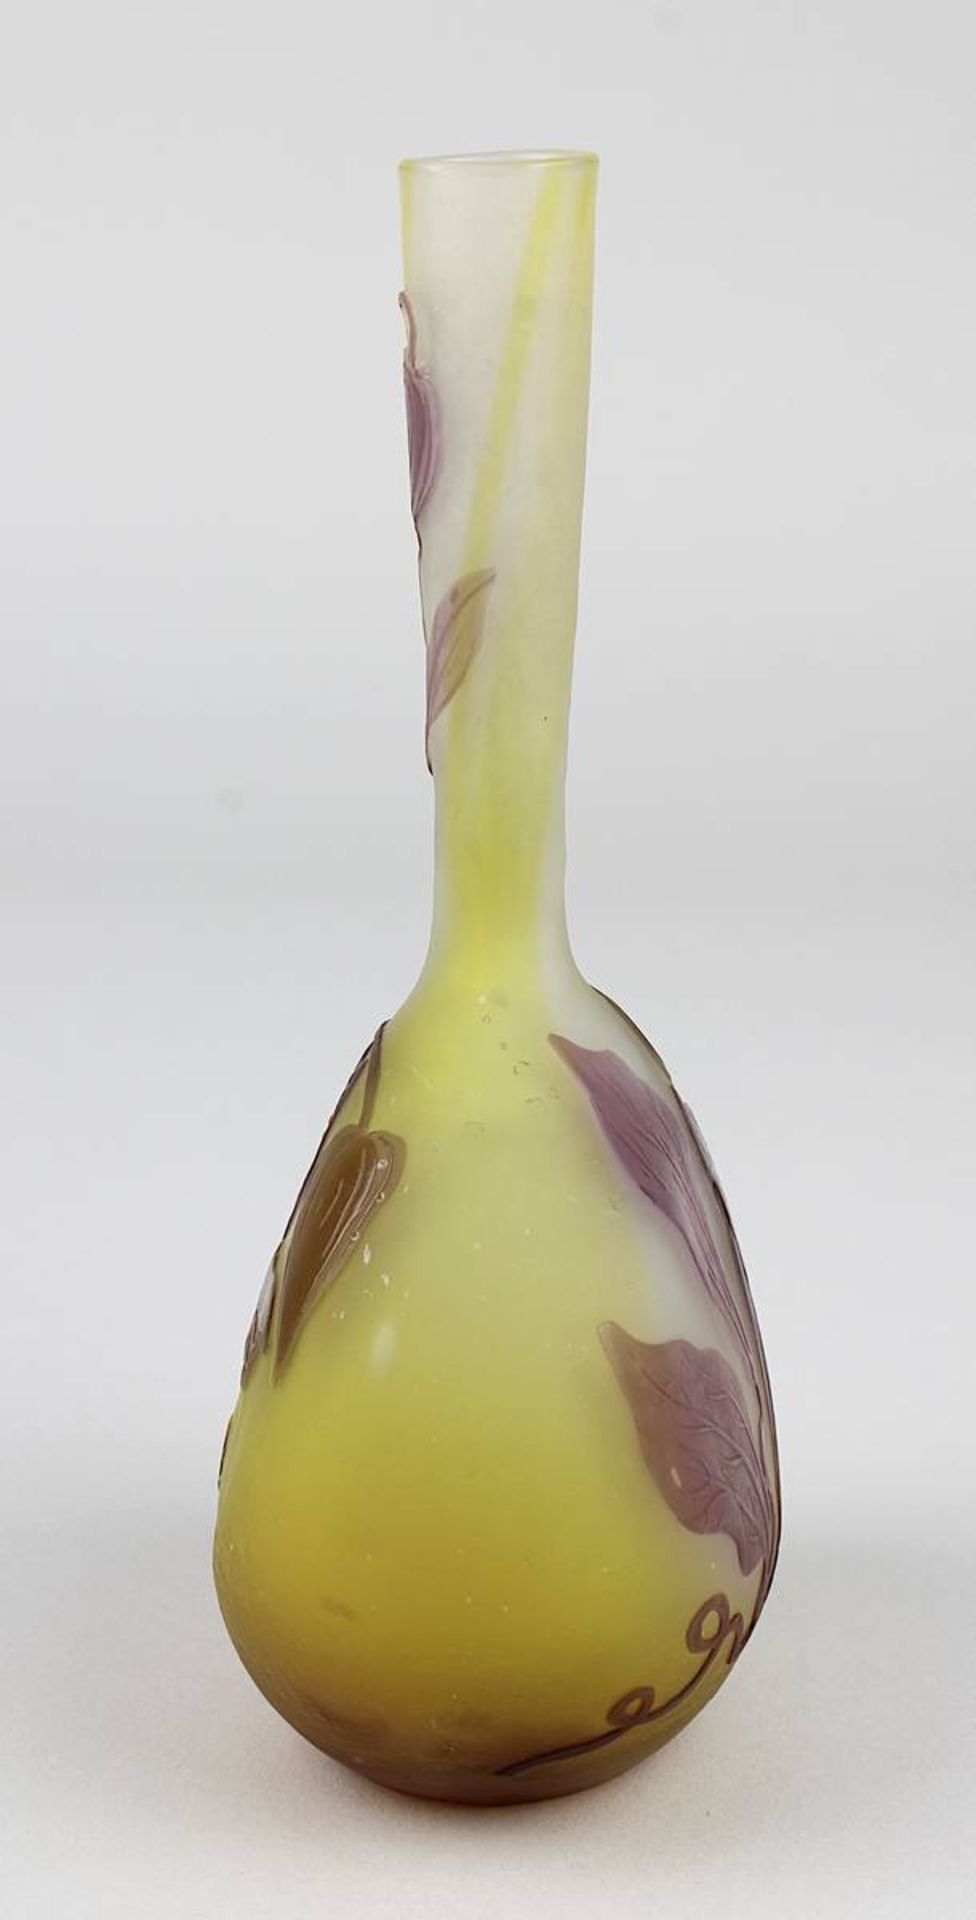 Gallé Jugendstil-Vase mit Windenblütenmotiv, Nancy 1906 - 1914, dickbauchiger Klarglaskörper mit - Image 4 of 4